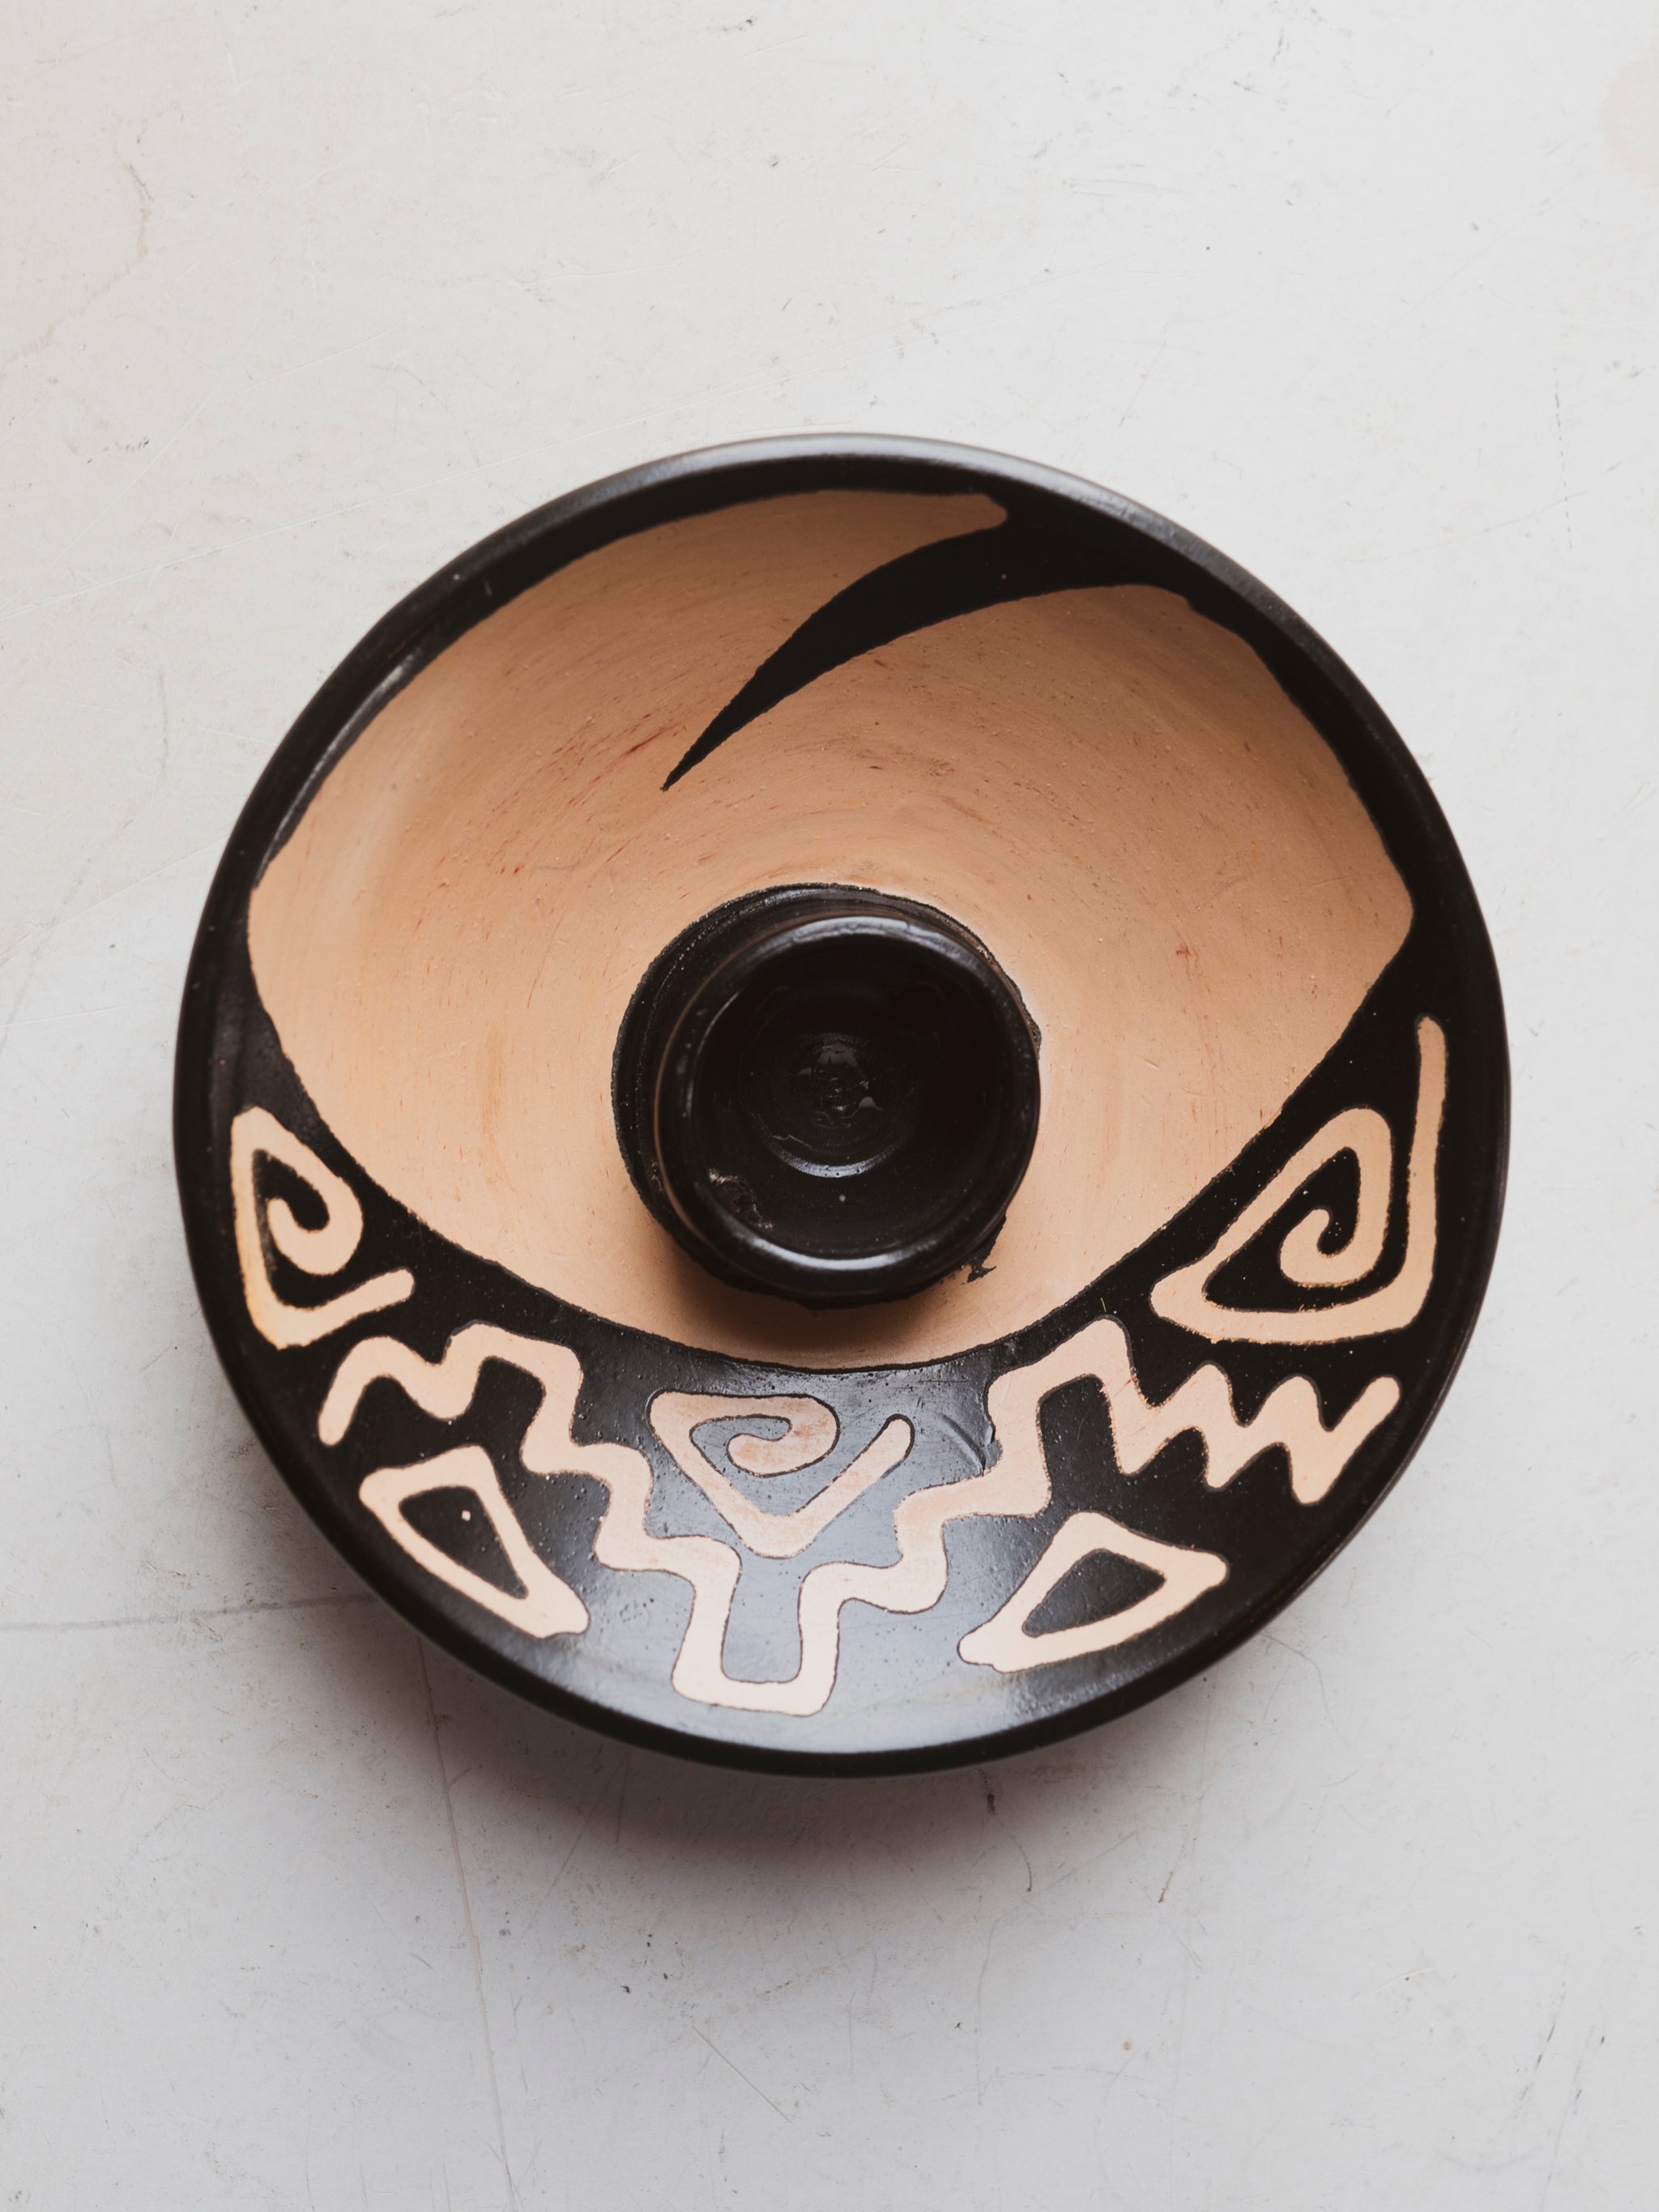 5" Peruvian Ceramic Incense Holder, HD49